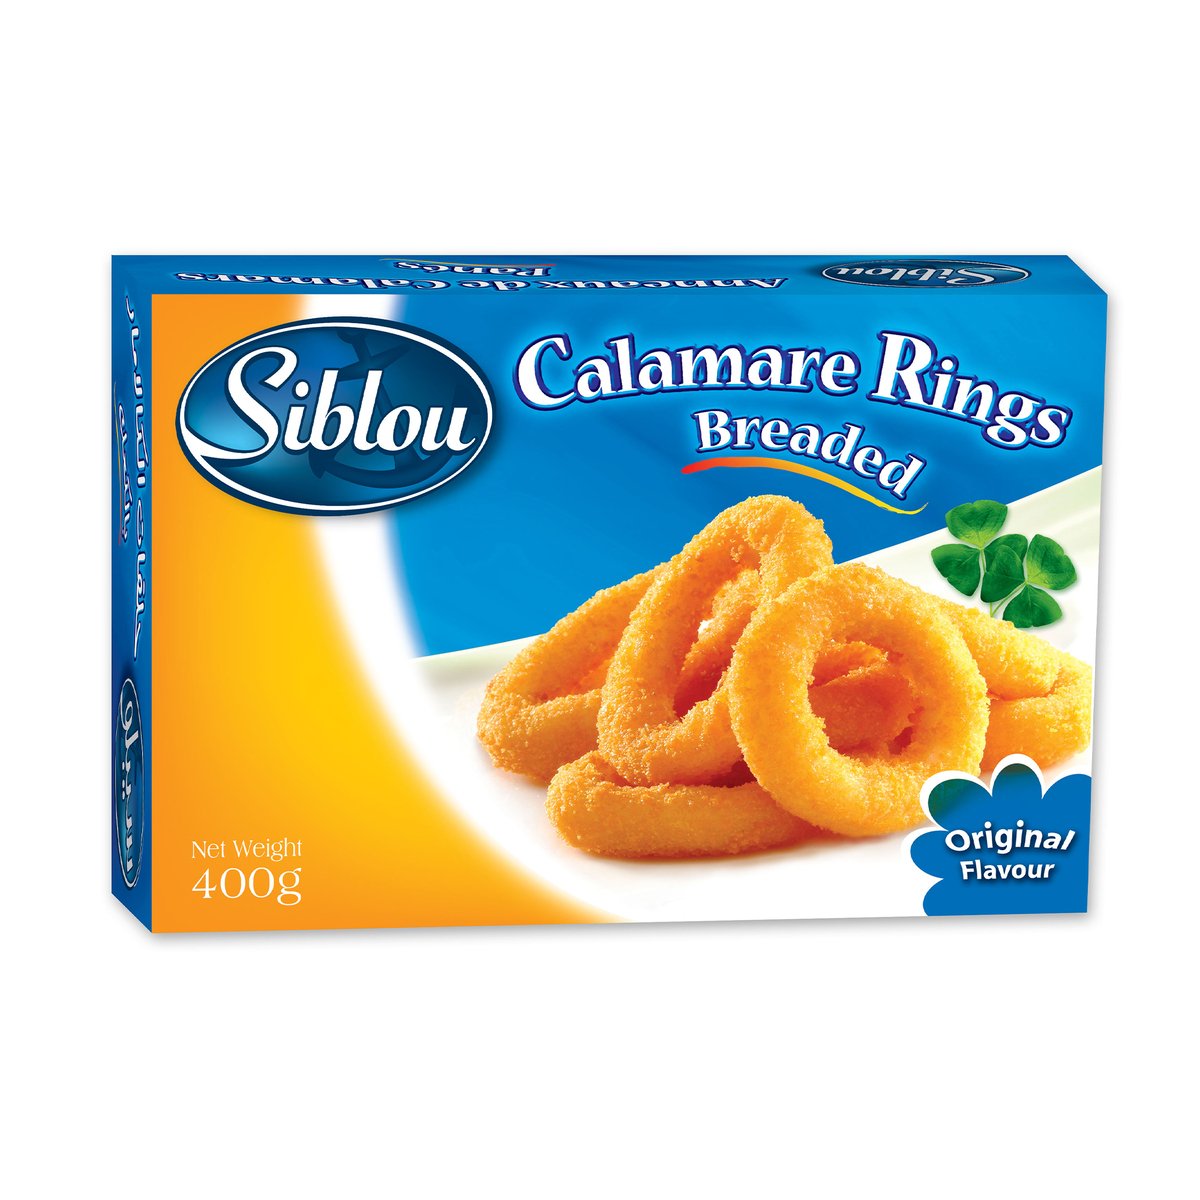 Siblou Breaded Calamare Rings Original 400 g